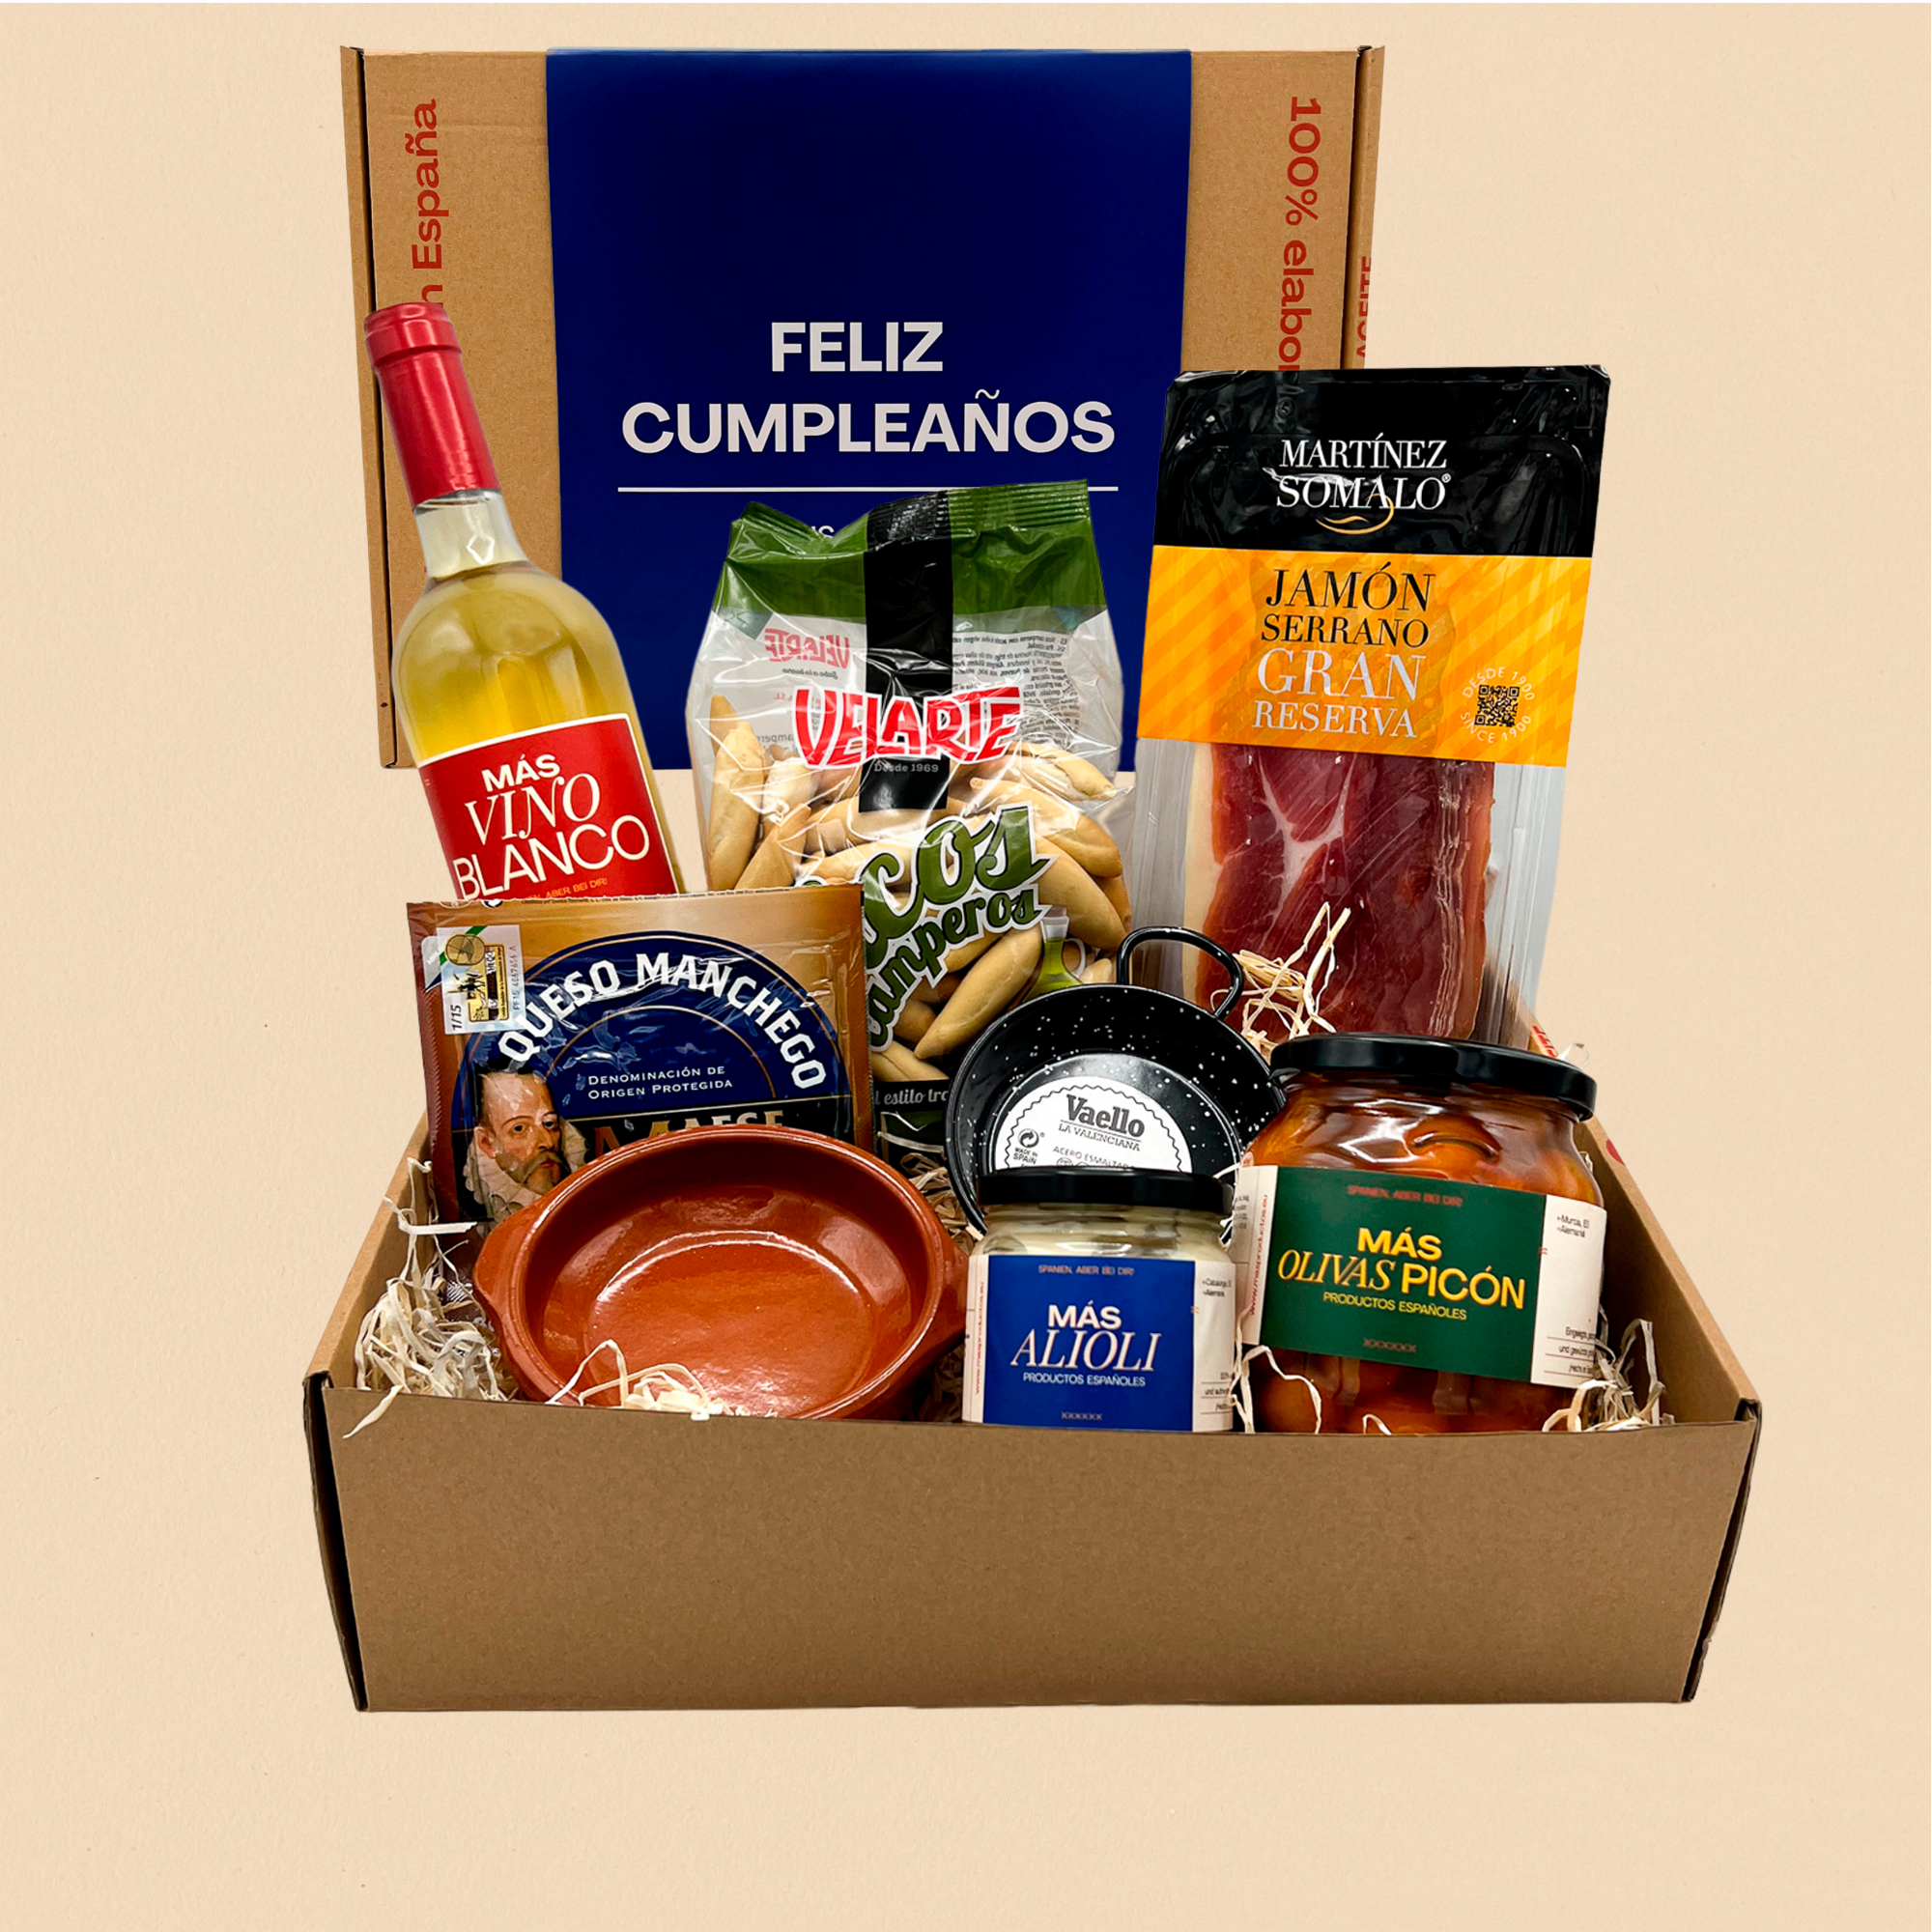 Feliz Cumpleaños spanische Geschenkbox